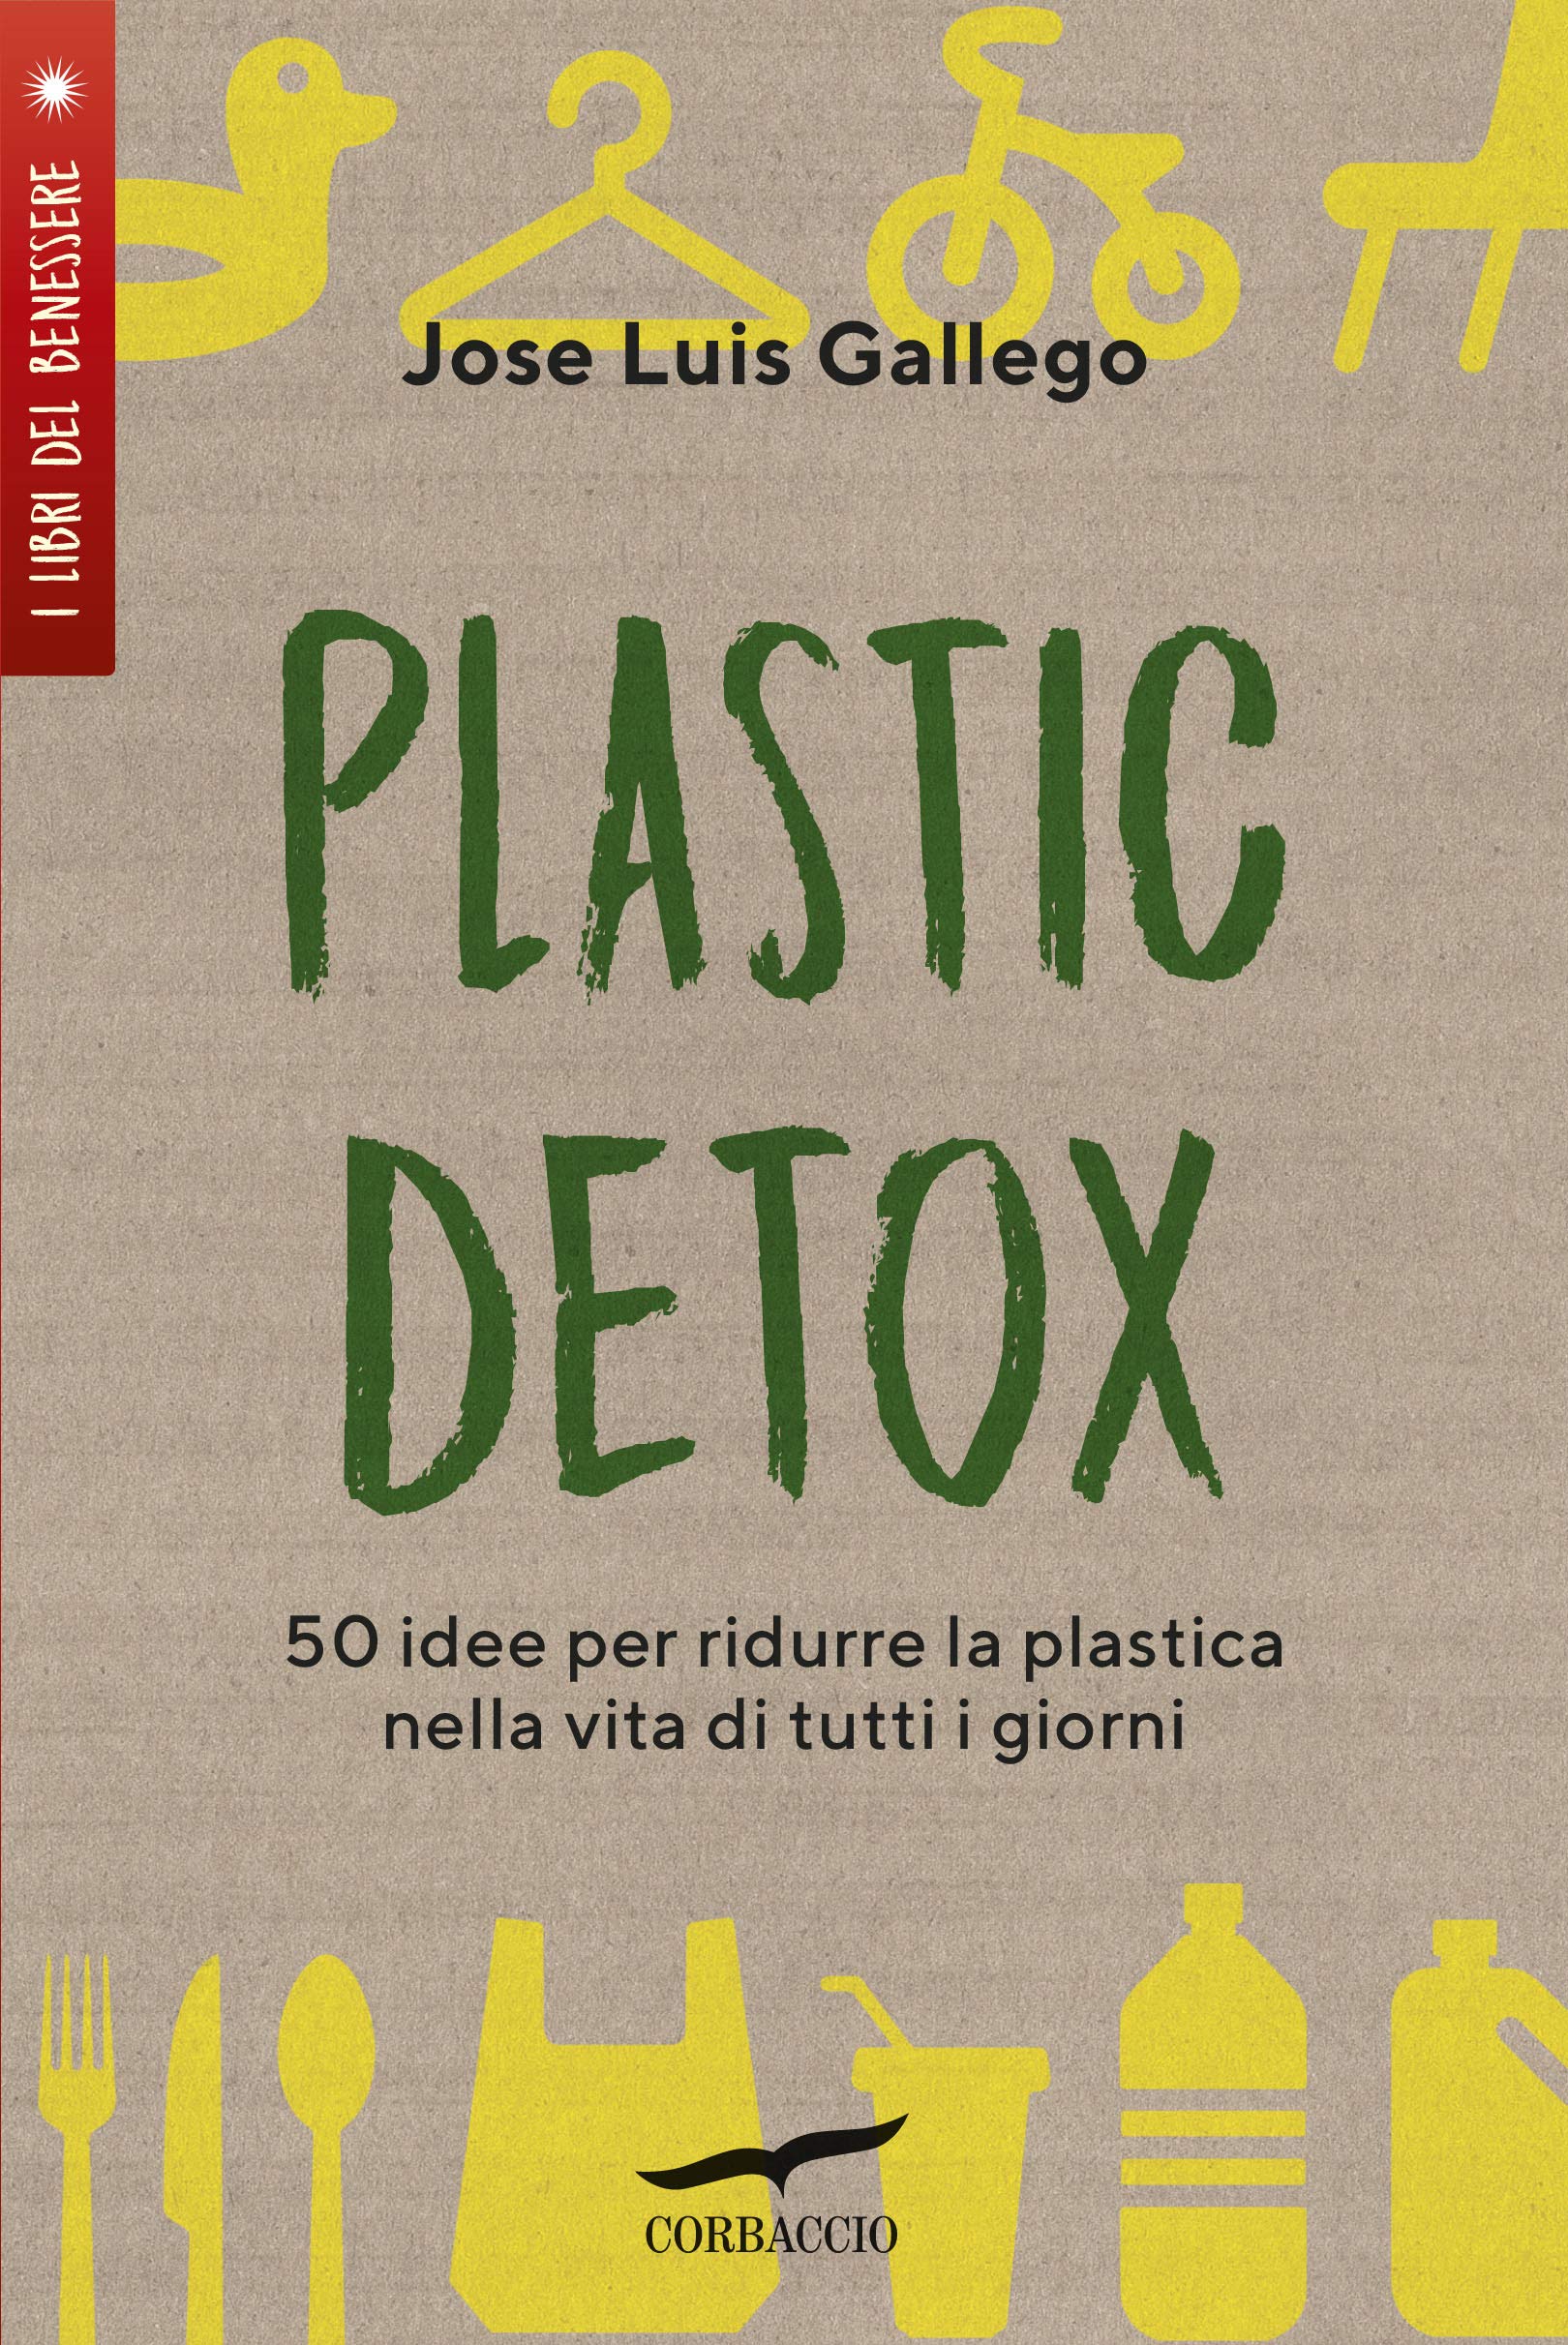 Plastic Detox di Jose Luis Gallego.